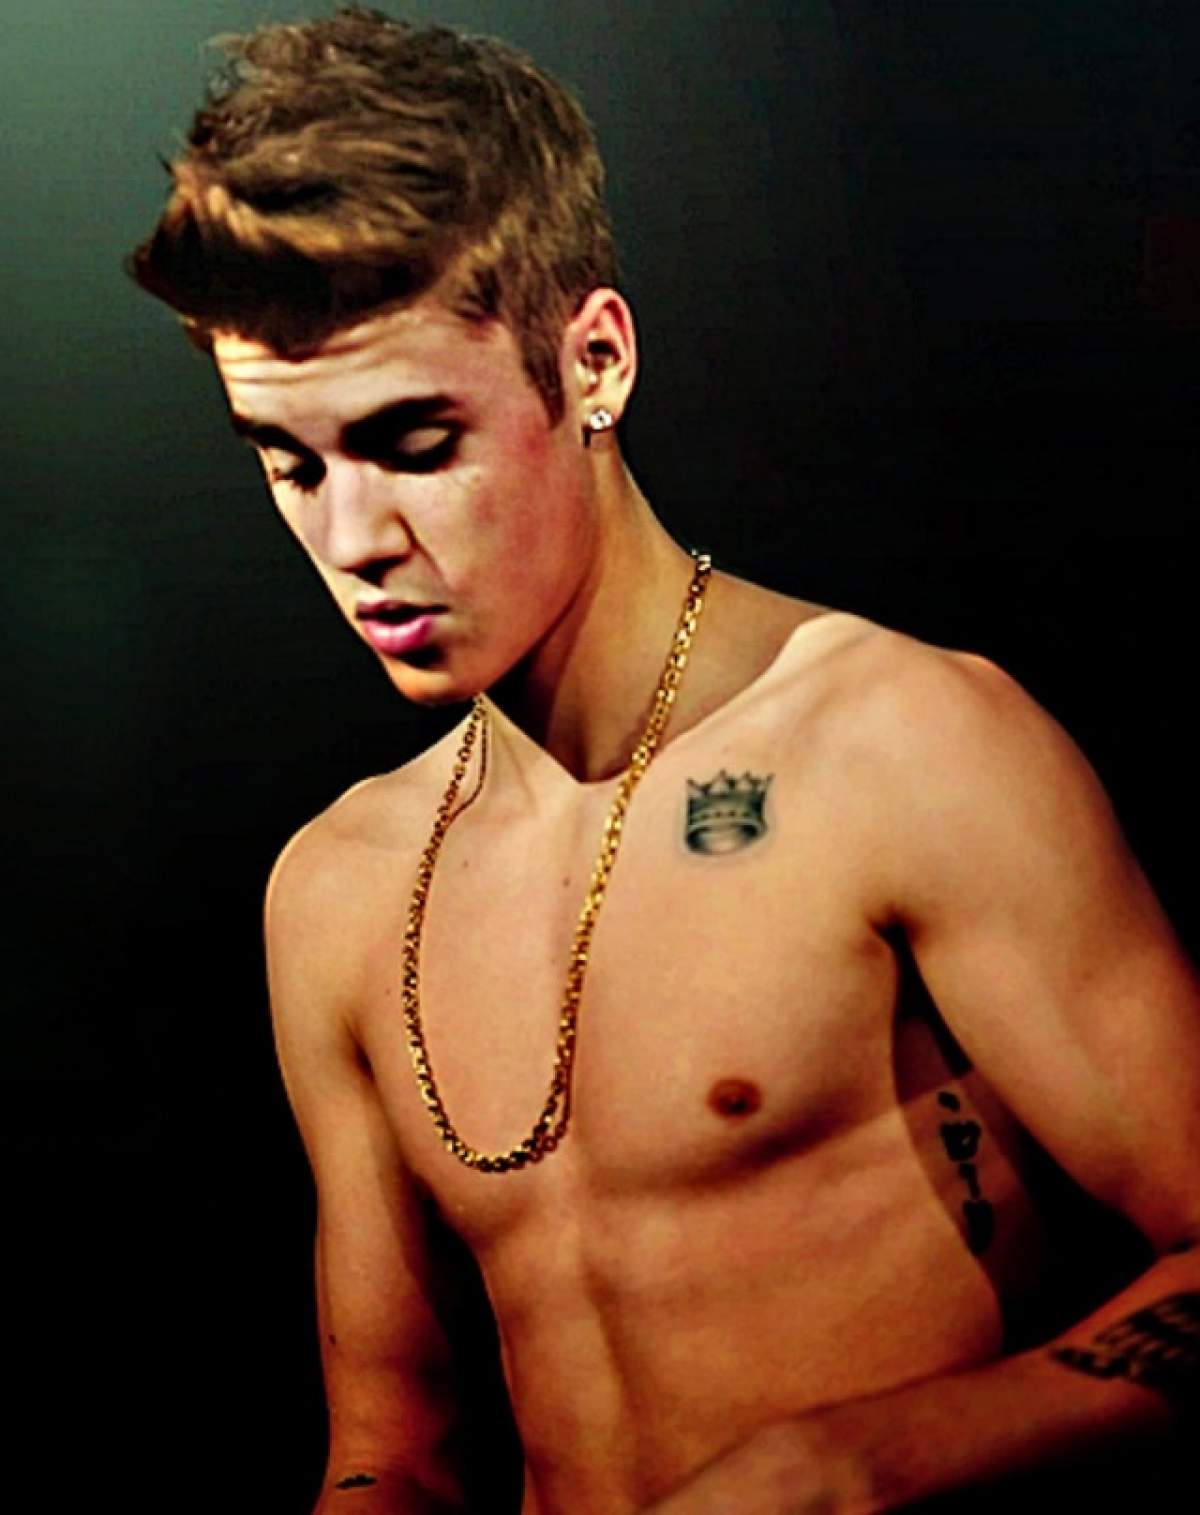 Justin Bieber şi-a făcut un tatuaj imens pe piept! Nu credeai că va avea curajul să-şi imprime pe corp aşa ceva!